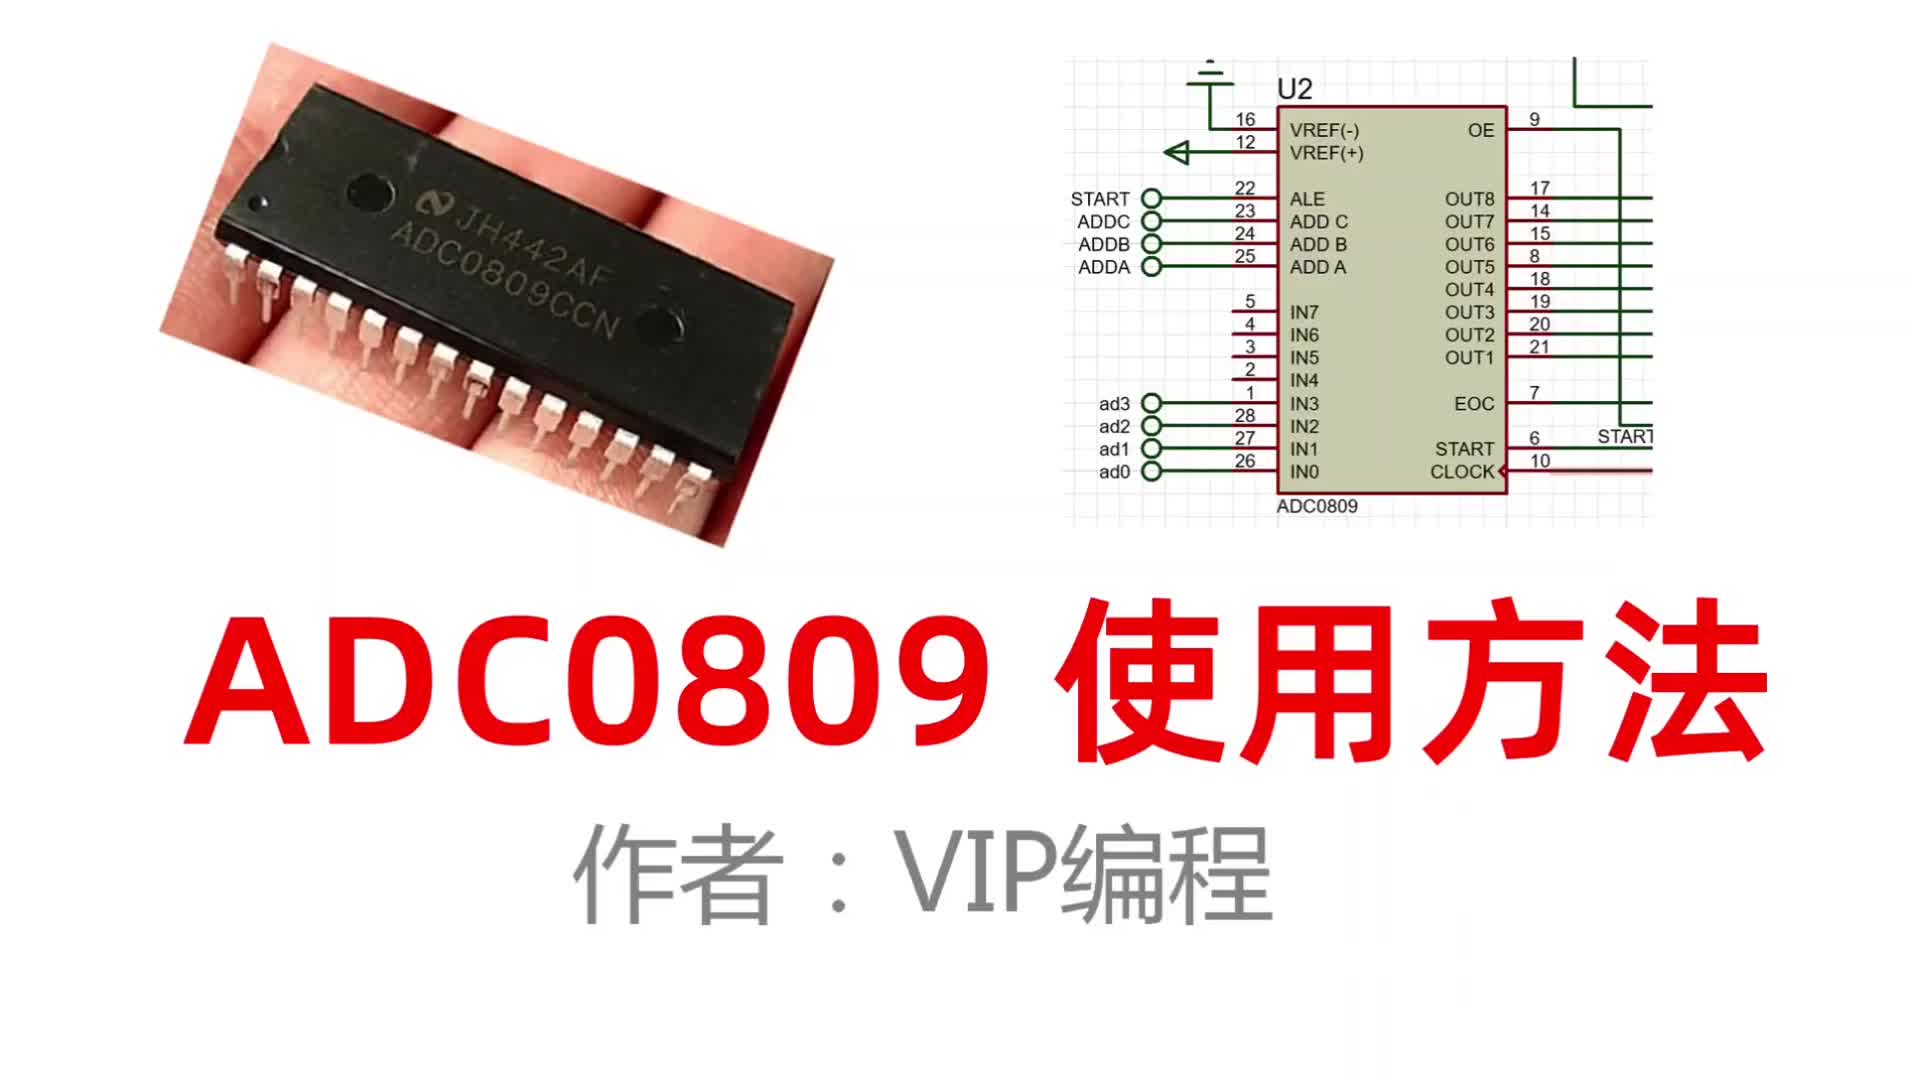 03---ADC0809四路电压采集，在1602液晶上显示甲流与普通流感区别#硬声创作季 